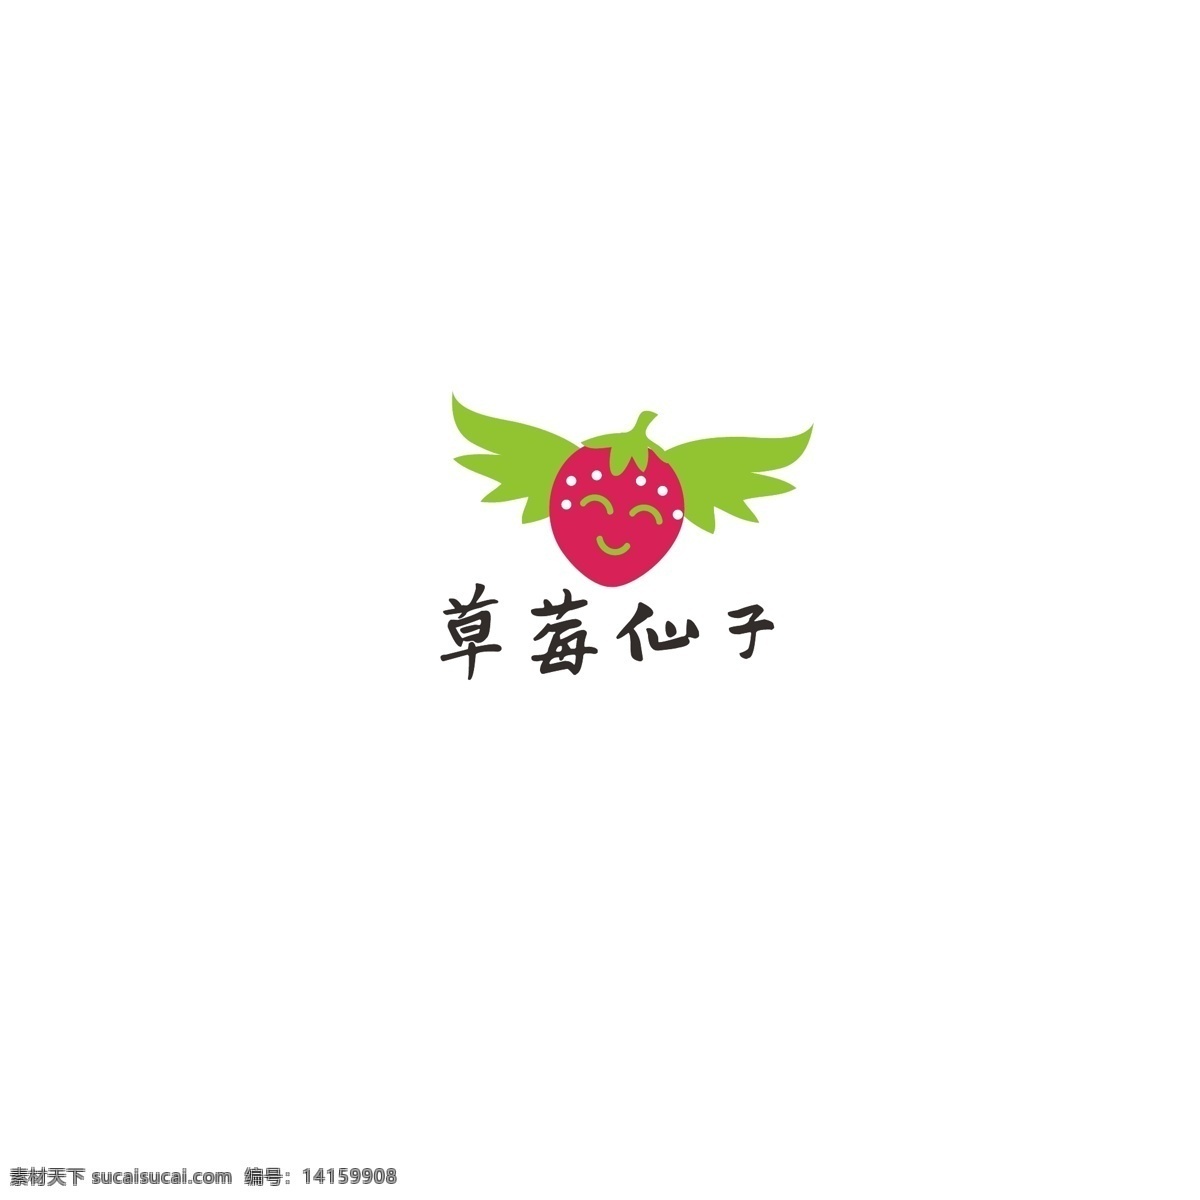 水果 logo 简约 草莓 绿色